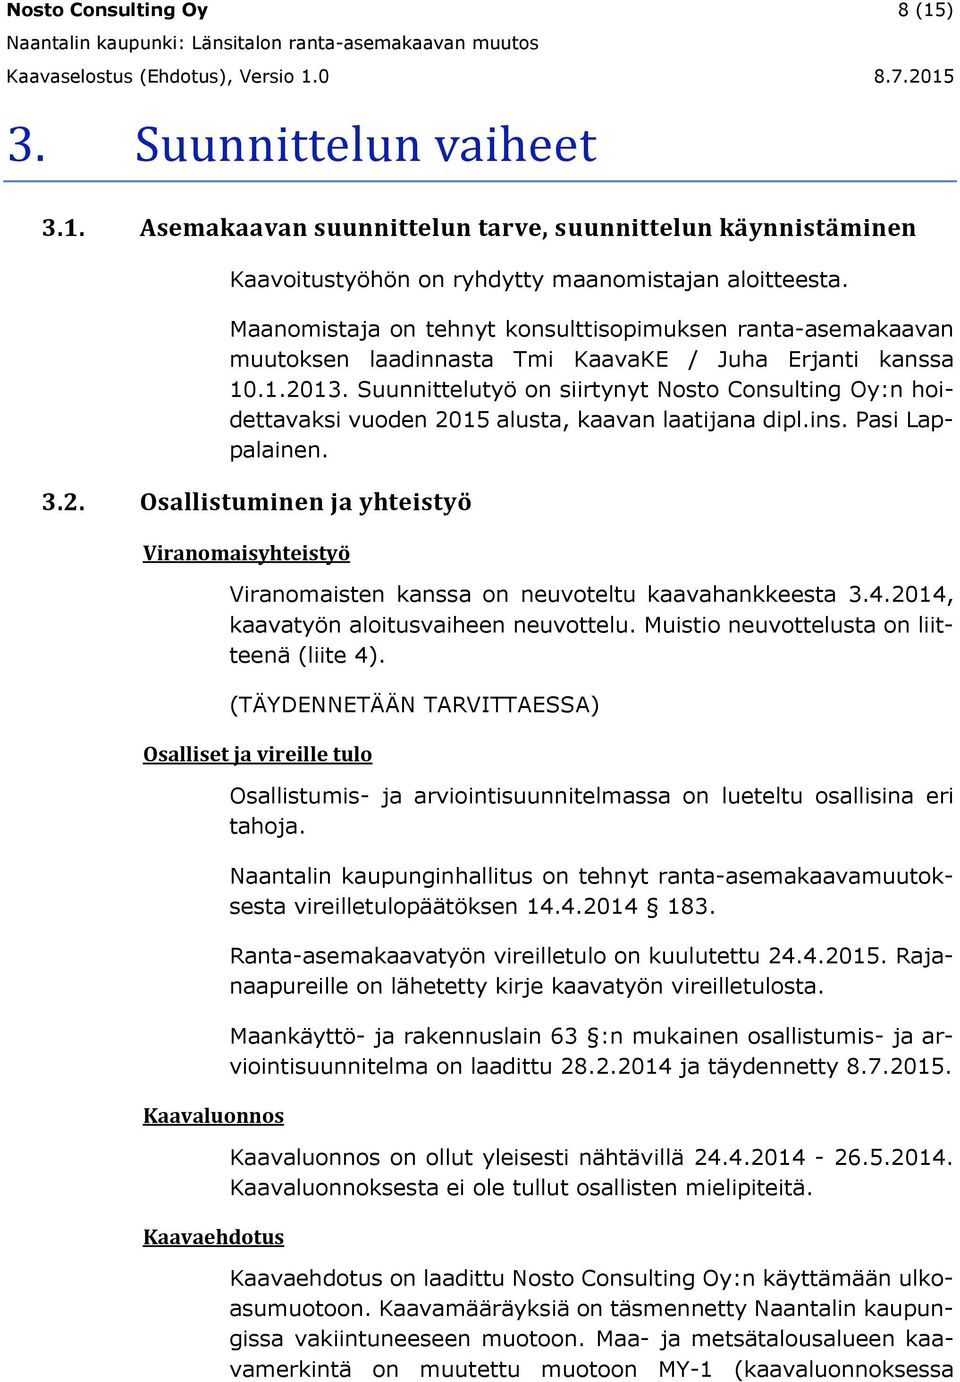 Suunnittelutyö on siirtynyt Nosto Consulting Oy:n hoidettavaksi vuoden 2015 alusta, kaavan laatijana dipl.ins. Pasi Lappalainen. 3.2. Osallistuminen ja yhteistyö Viranomaisyhteistyö Viranomaisten kanssa on neuvoteltu kaavahankkeesta 3.